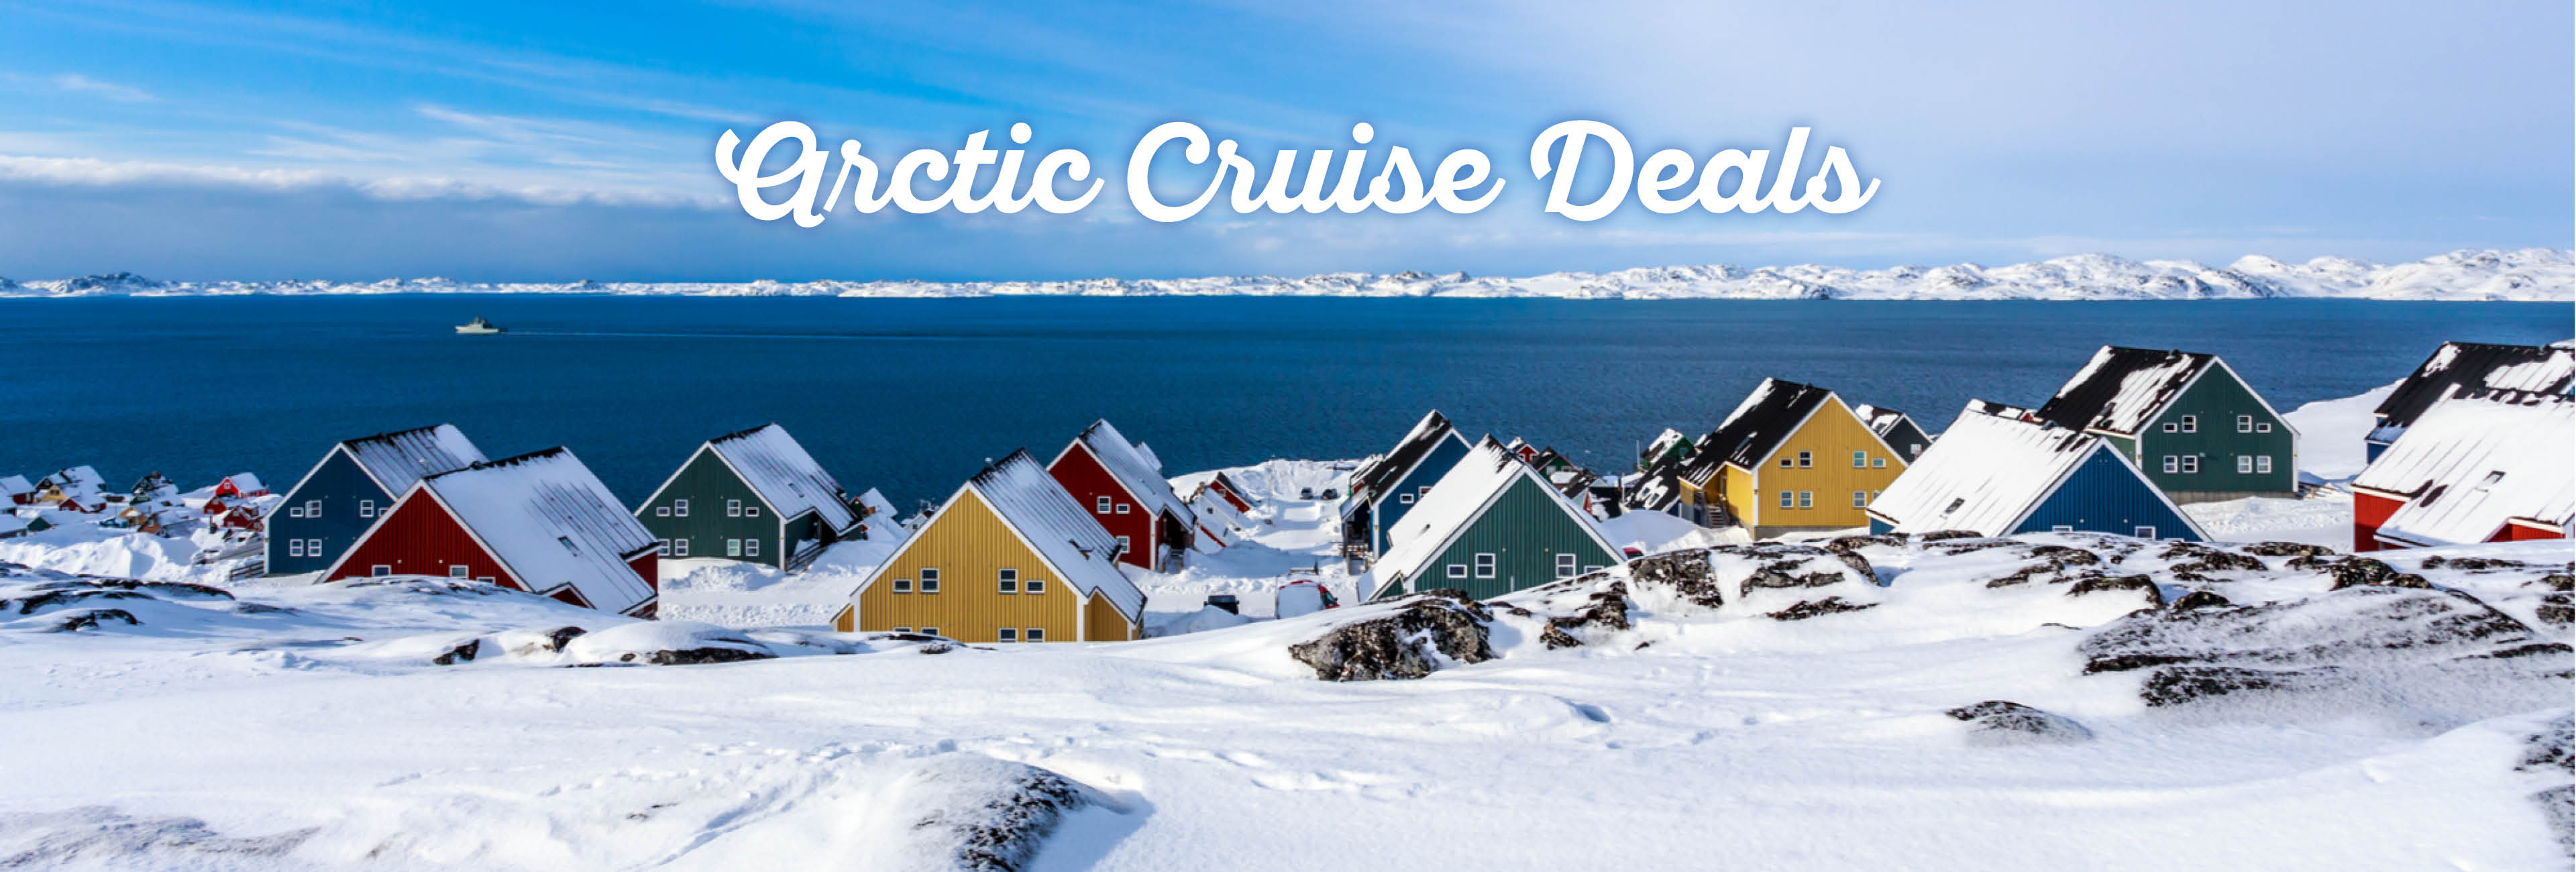 arctic-cruise-deals1.jpg